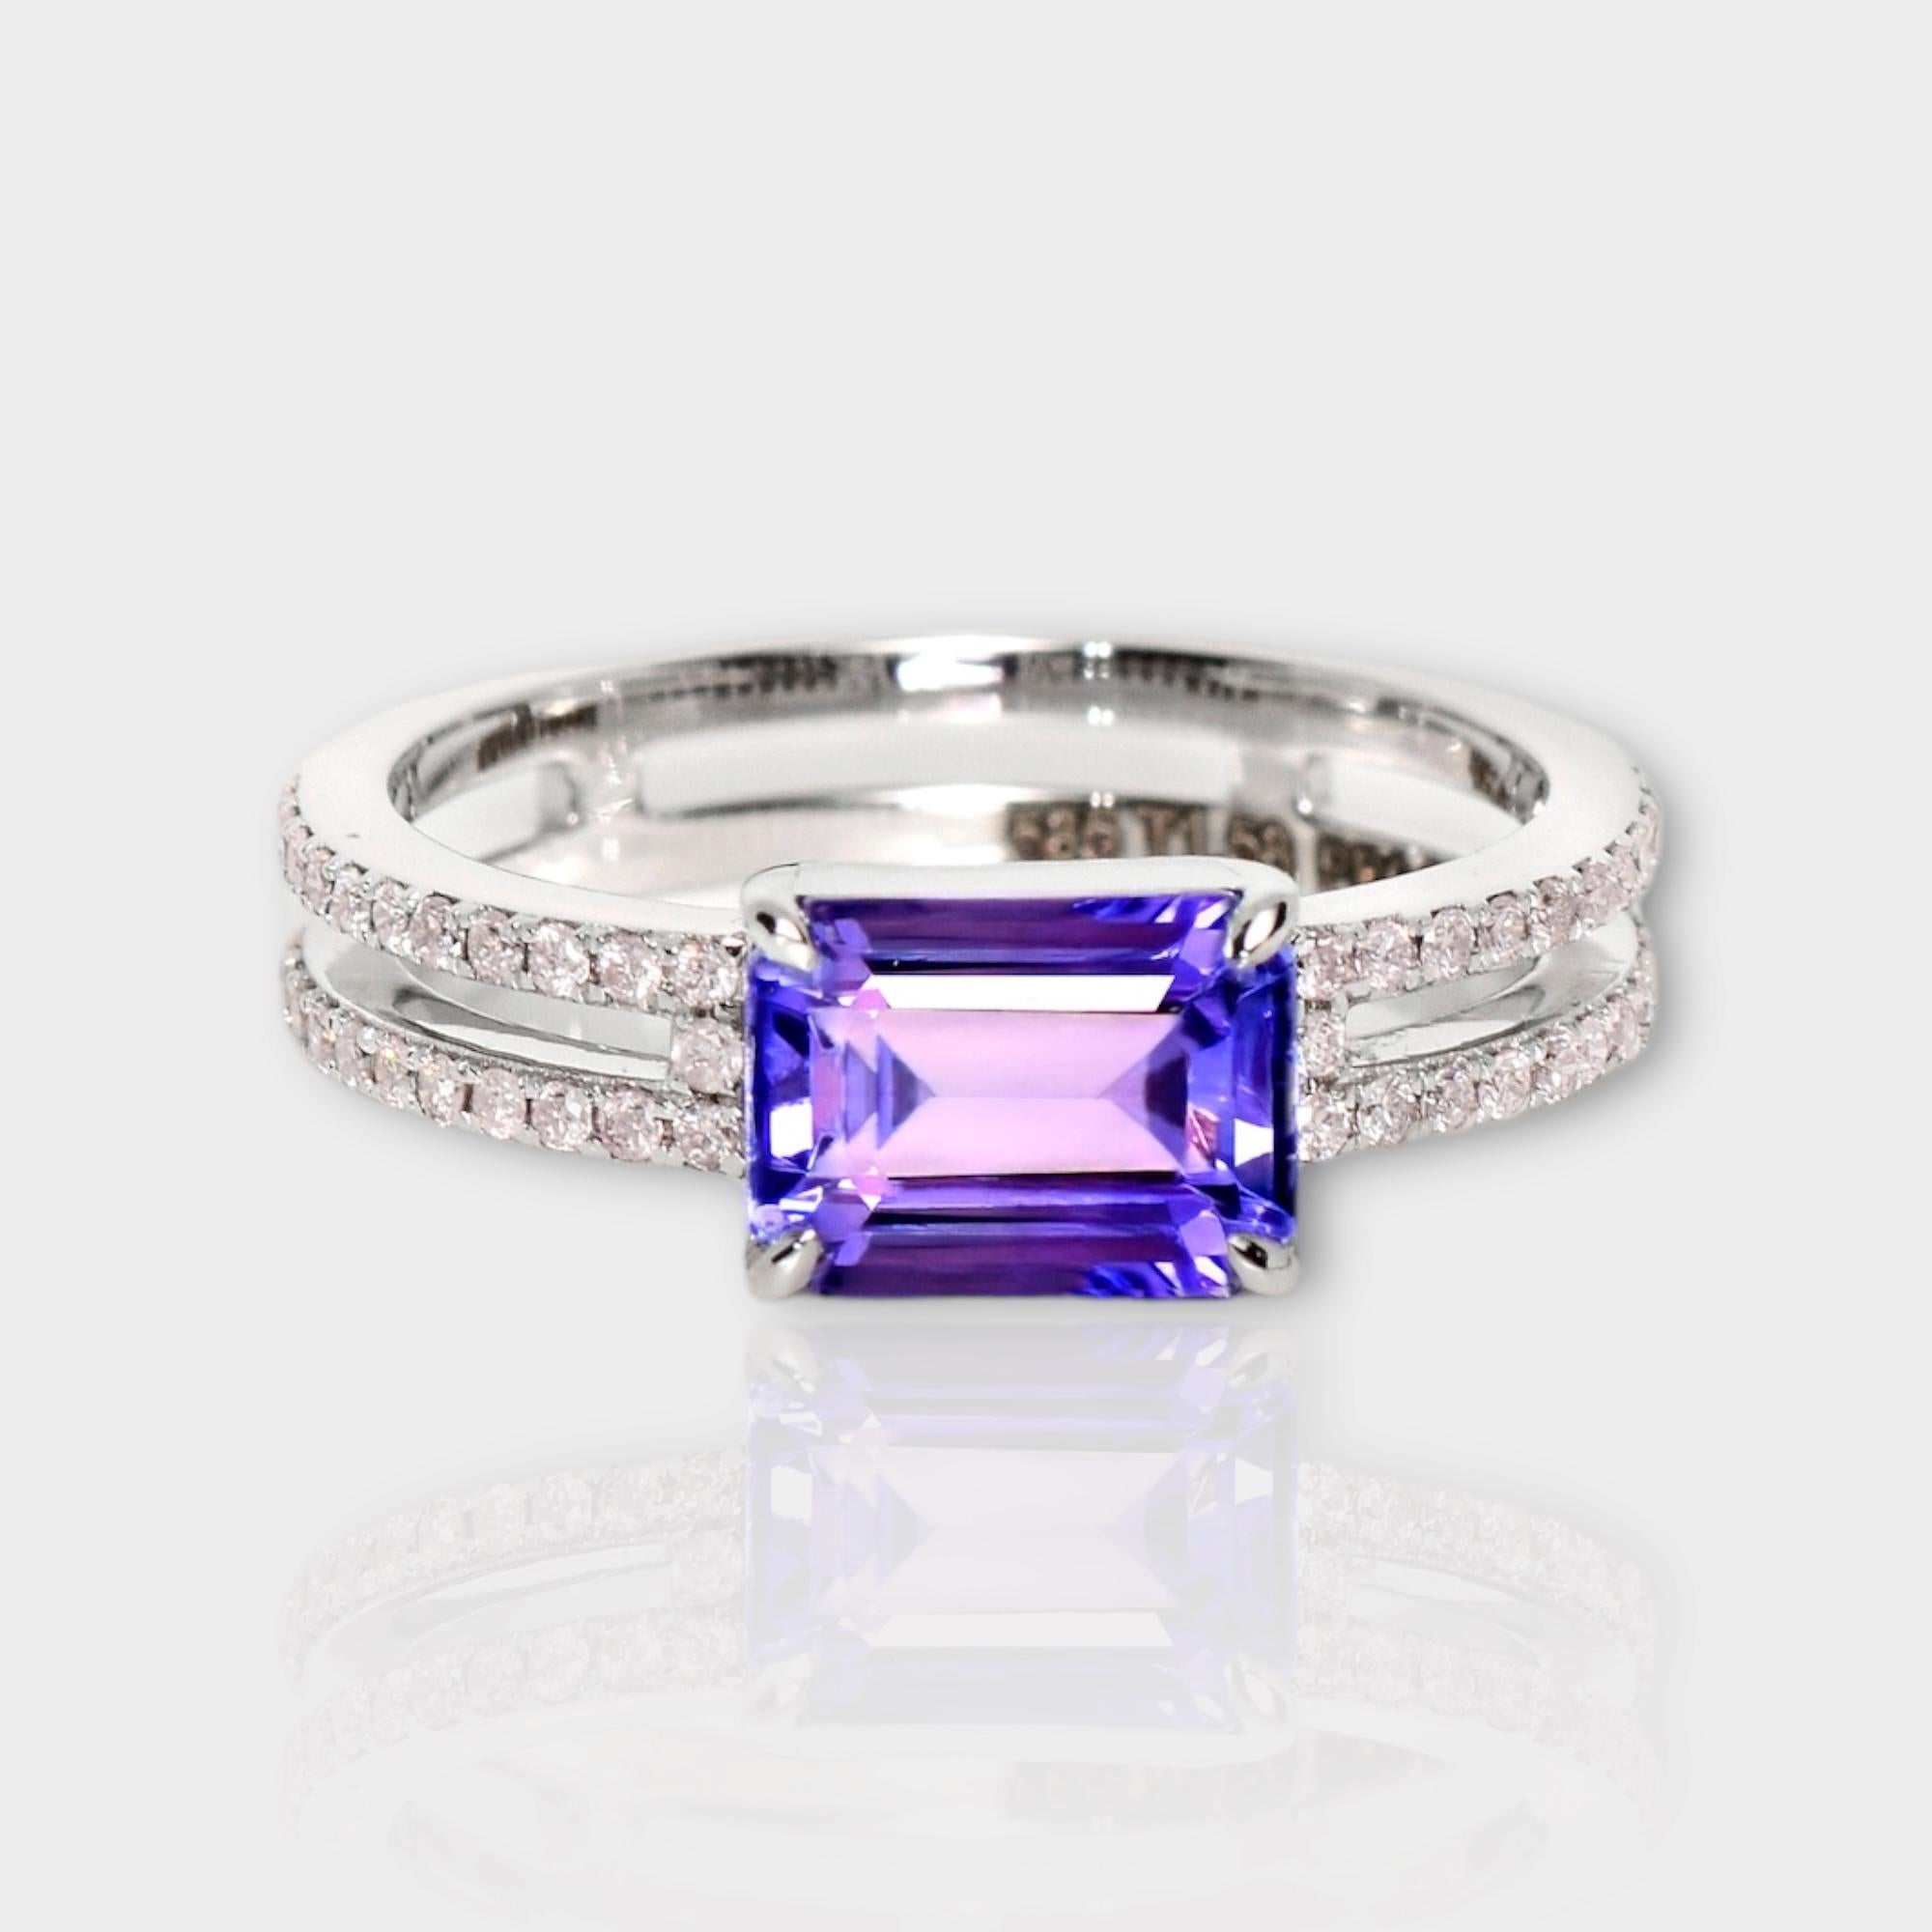 *IGI 14K 1.58 ct Tansanit&Rosa Diamant Antiker Art Deco Stil Verlobungsring*
Der natürliche, intensiv bläulich-violette Tansanit mit einem Gewicht von 1,58 ct ist der Mittelstein, umgeben von natürlichen rosafarbenen Diamanten mit einem Gewicht von